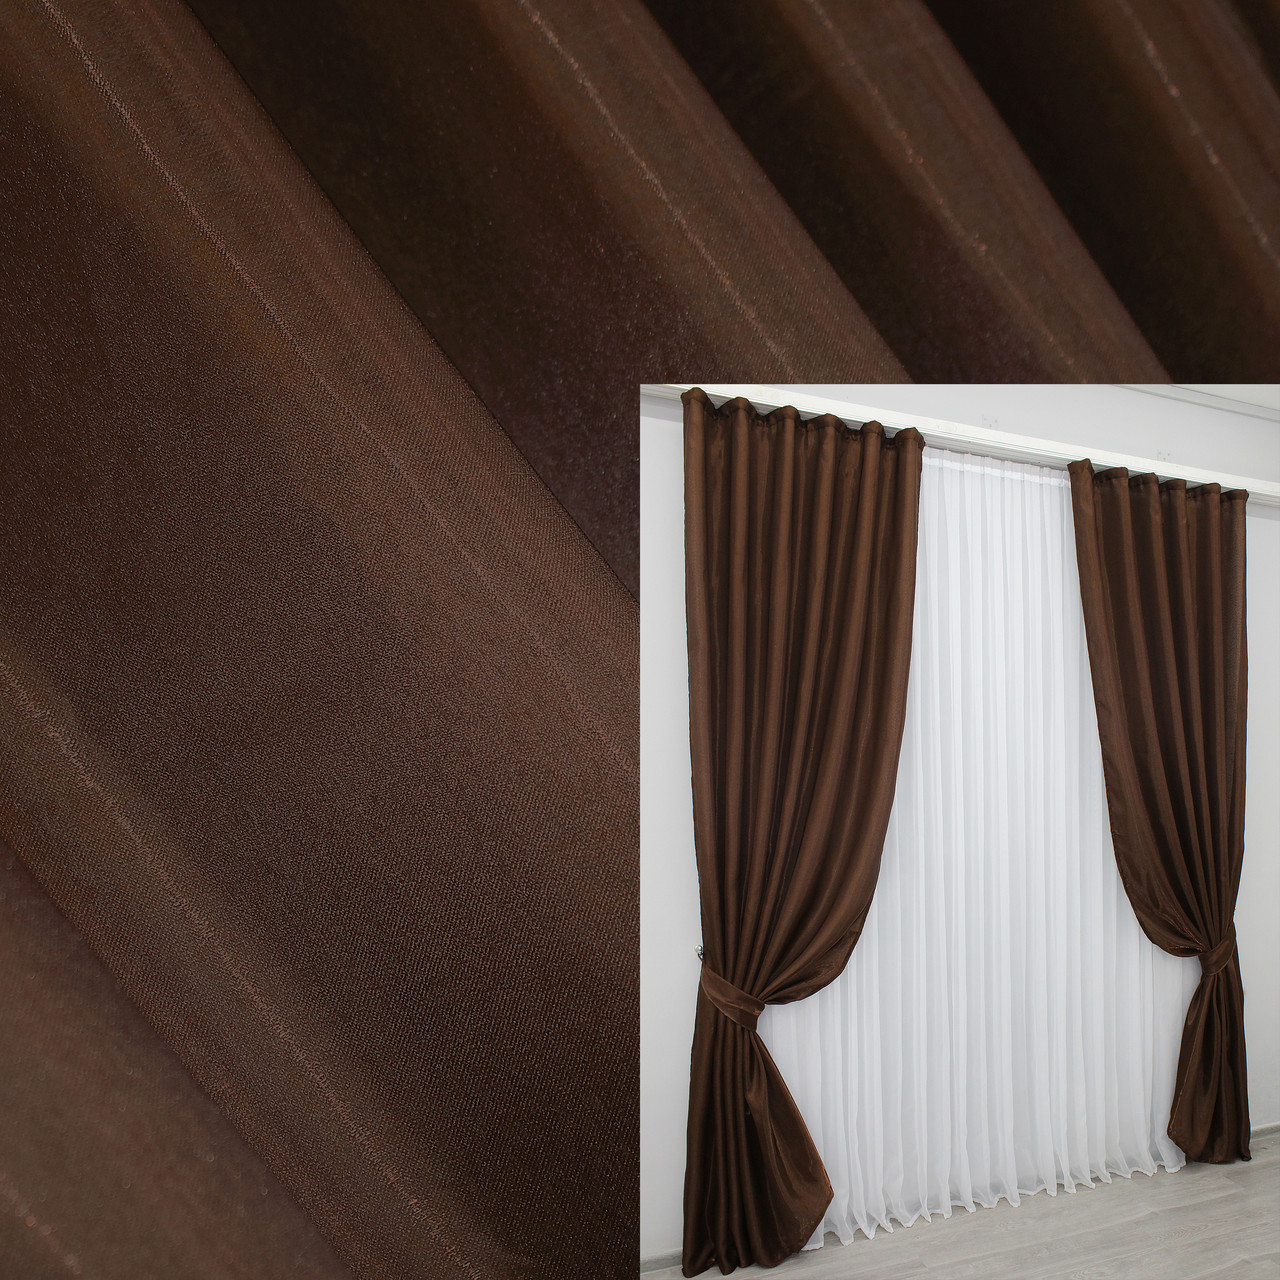 Атласні штори (2шт. 1,5х2,7м.) Монорей, колір коричневий. Код 798ш 30-611, фото 1